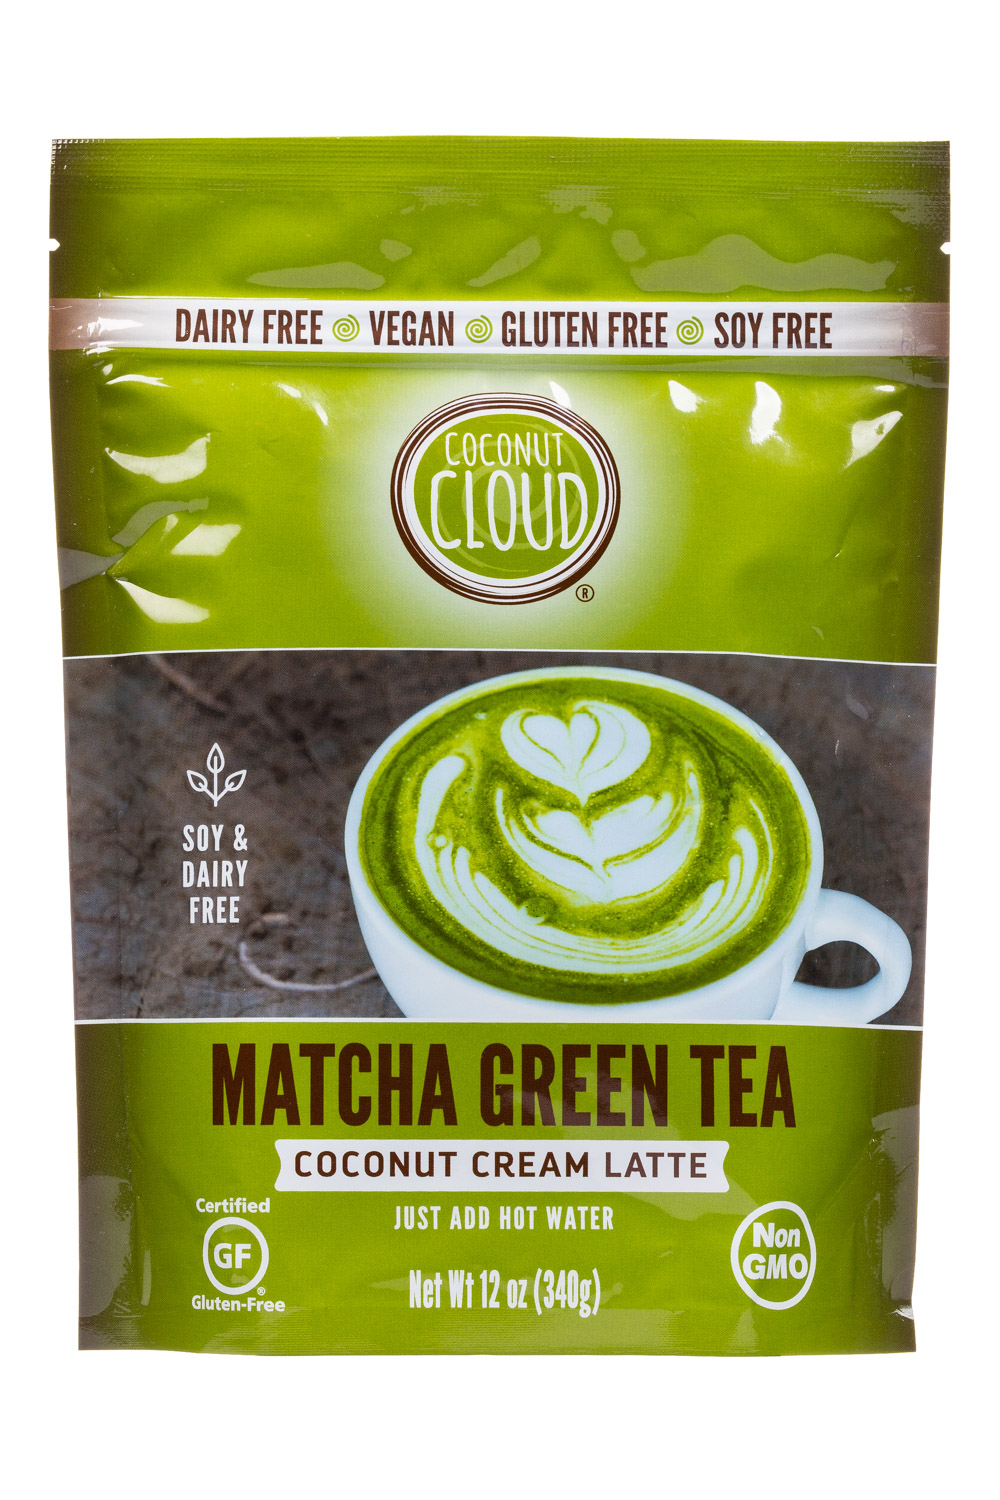 Matcha Green Tea (2018)